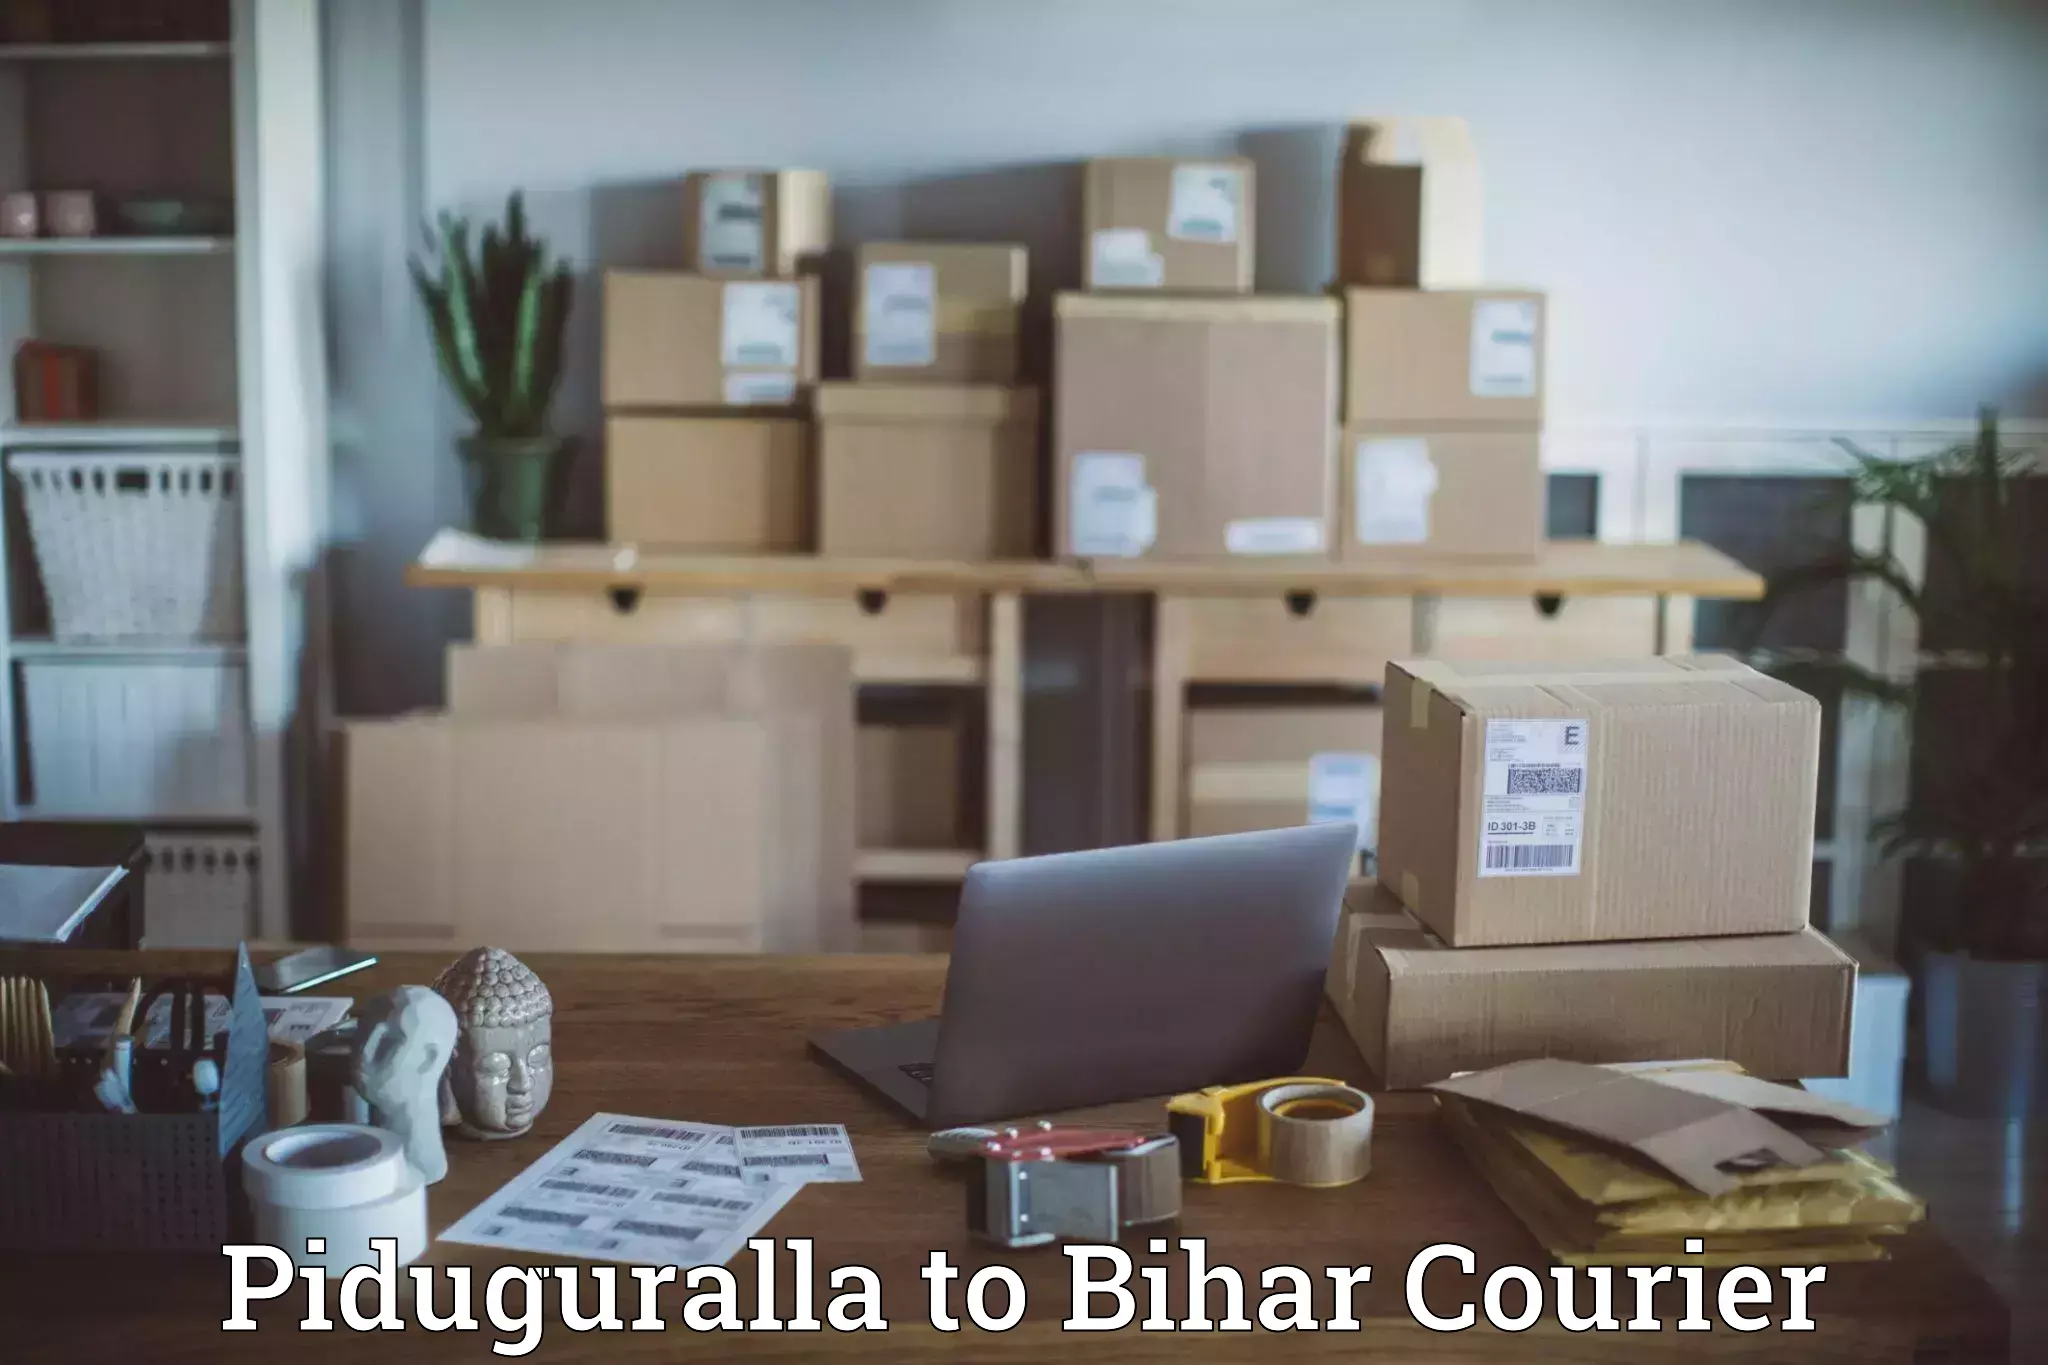 Courier service comparison Piduguralla to Biraul